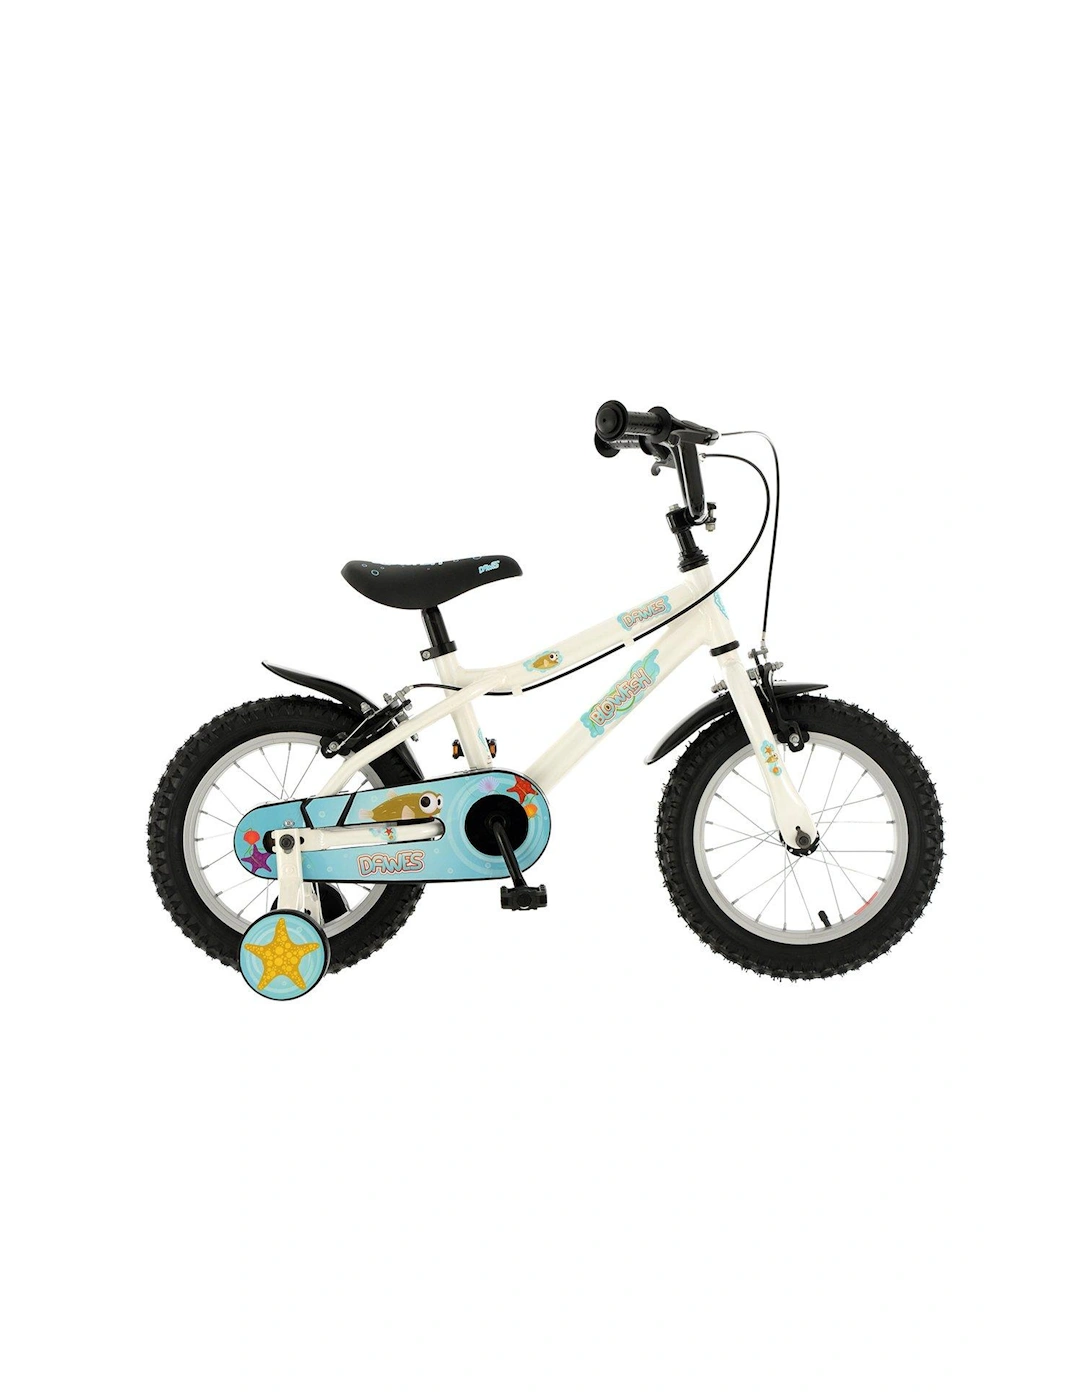 Blowfish 14-Inch Wheel Childrens Bike, 2 of 1